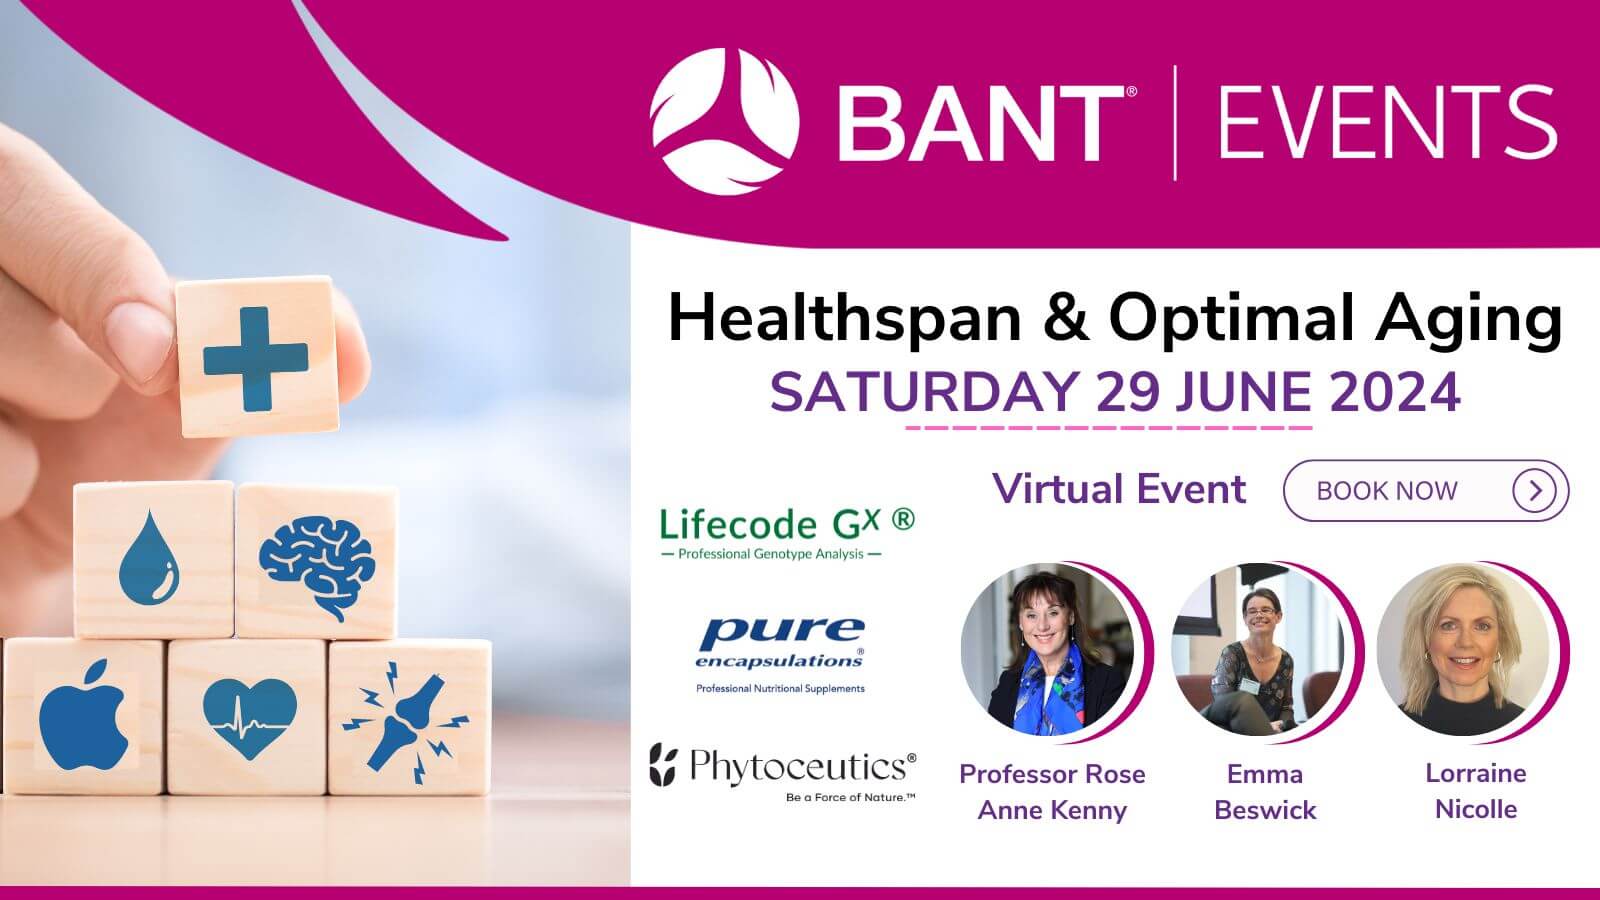 BANT Healthspan Event in June 2024